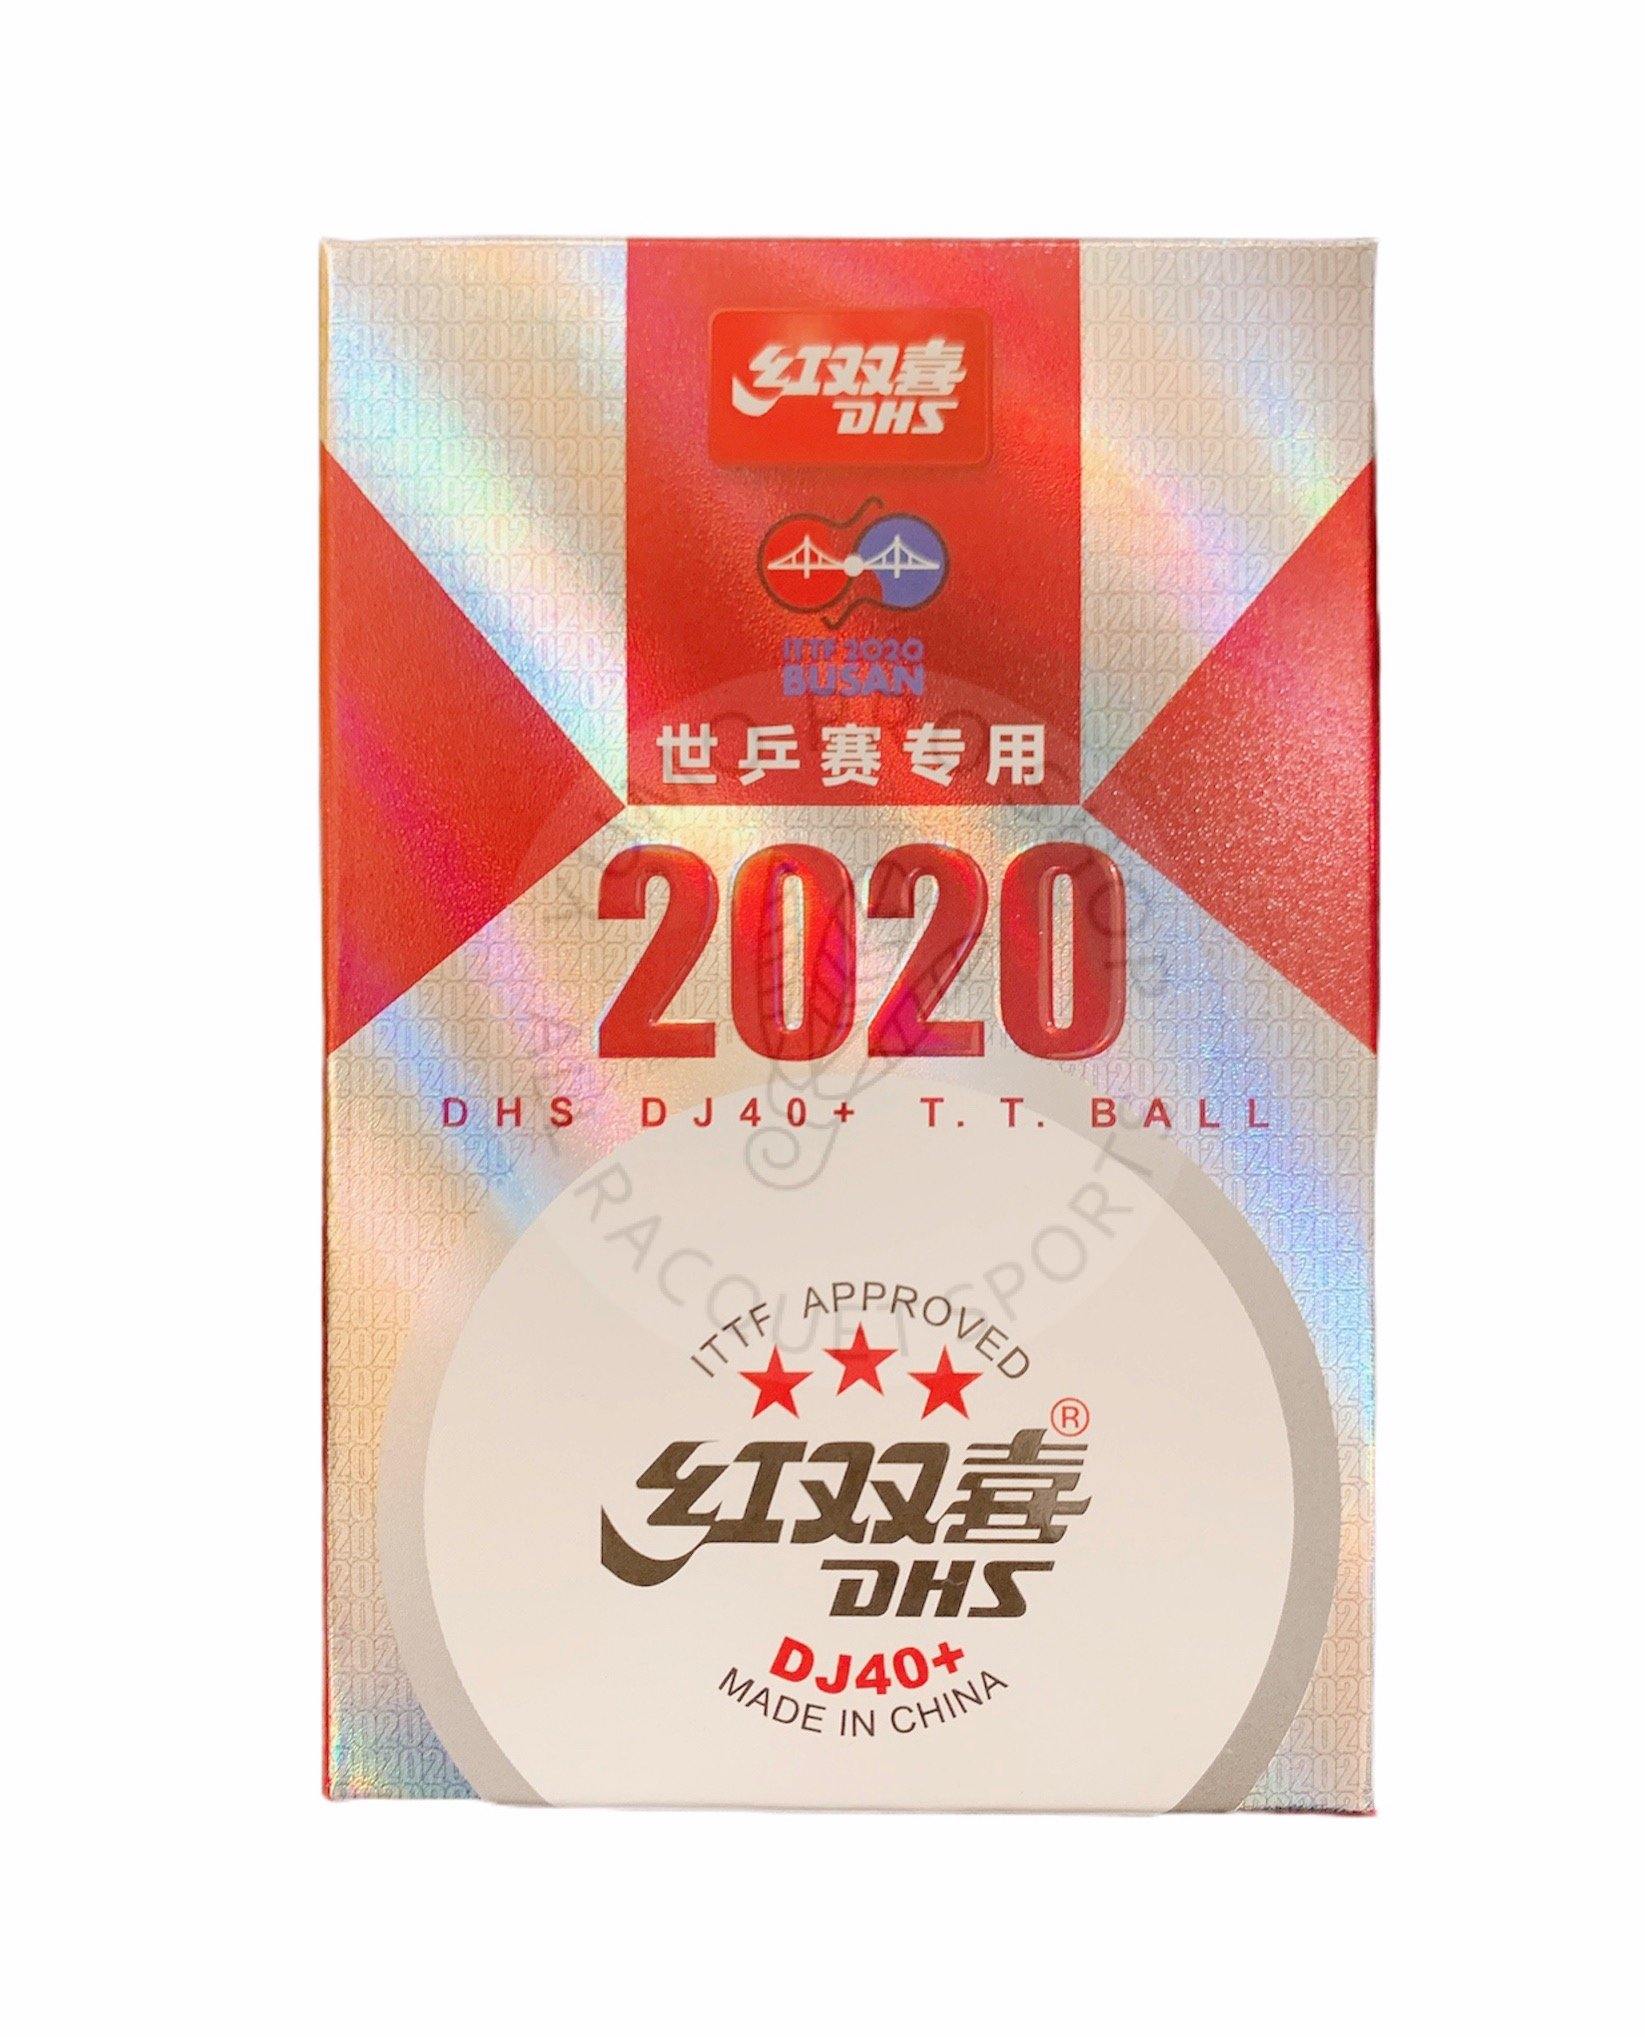 ITTF Worlds Busan 2020 Table Tennis Ball DHS DJ40 2 x 6 pcs box 